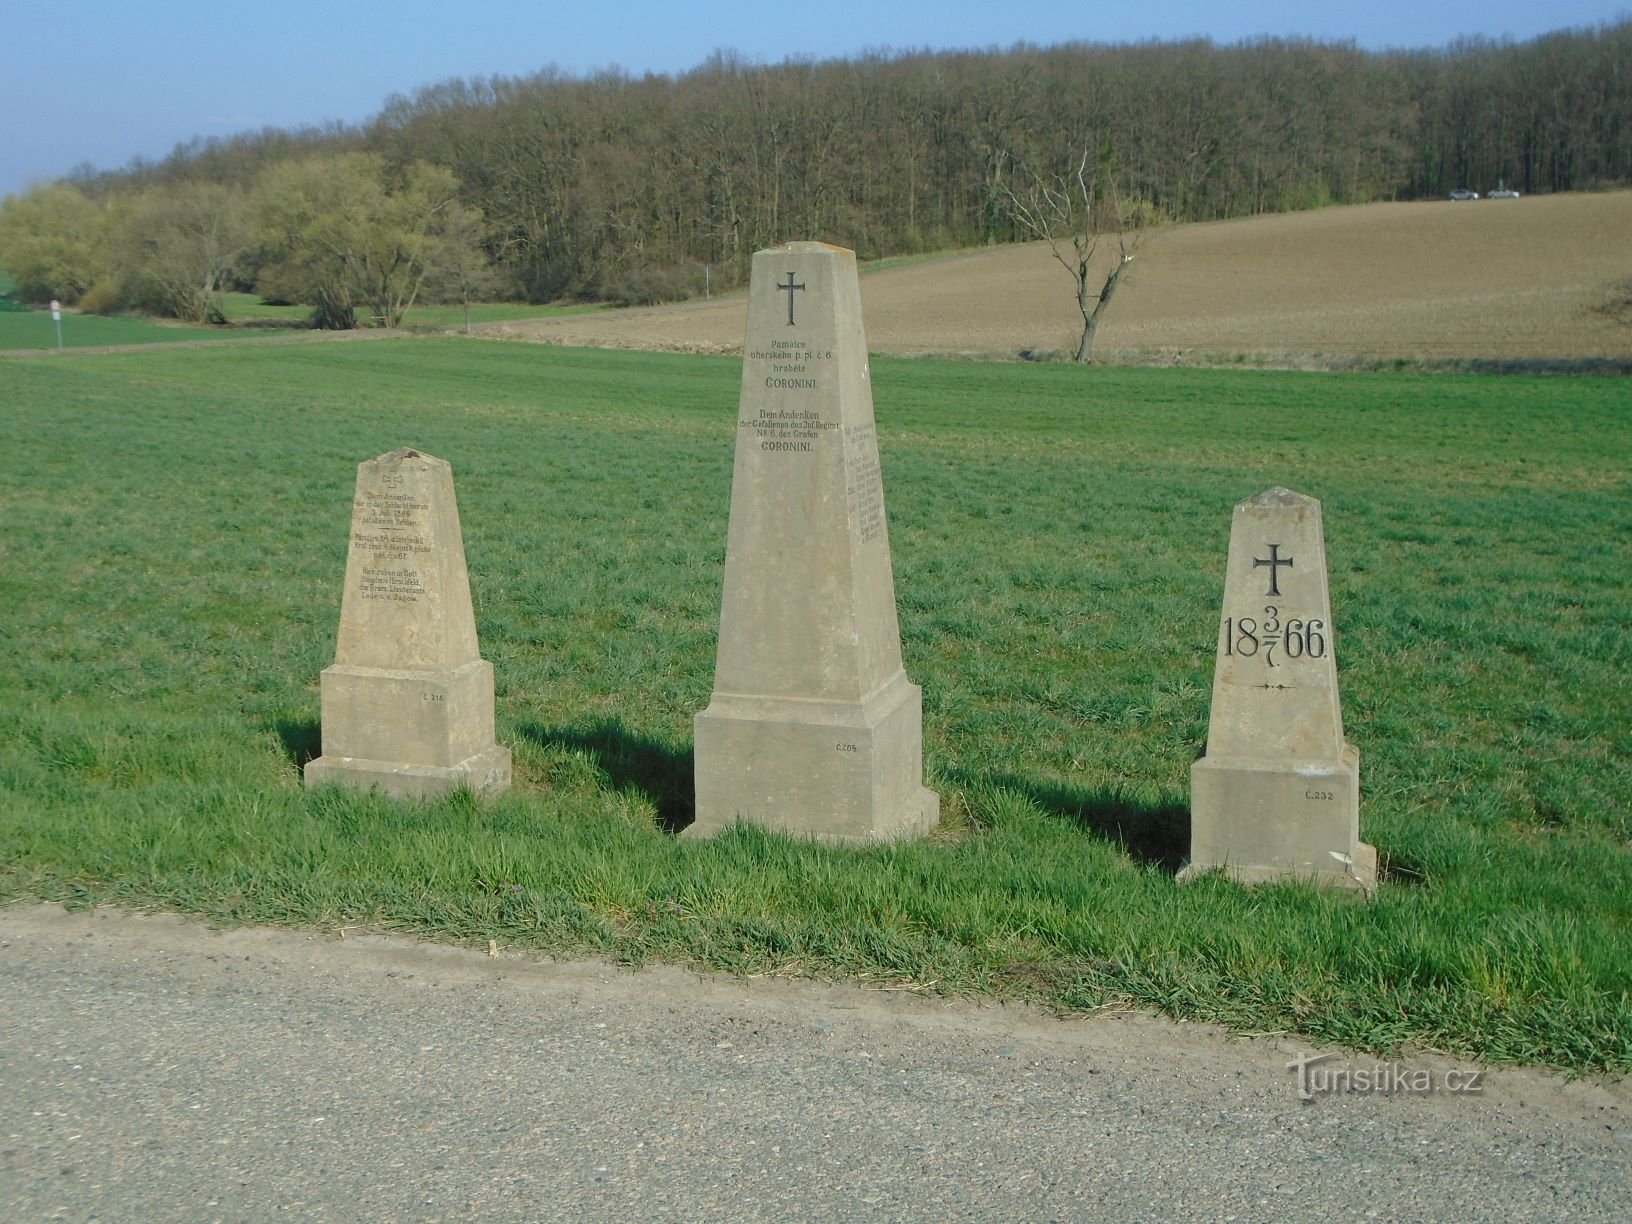 Monumentos de la batalla de 1866 junto a la carretera (Čistěves, 7.4.2019/XNUMX/XNUMX)